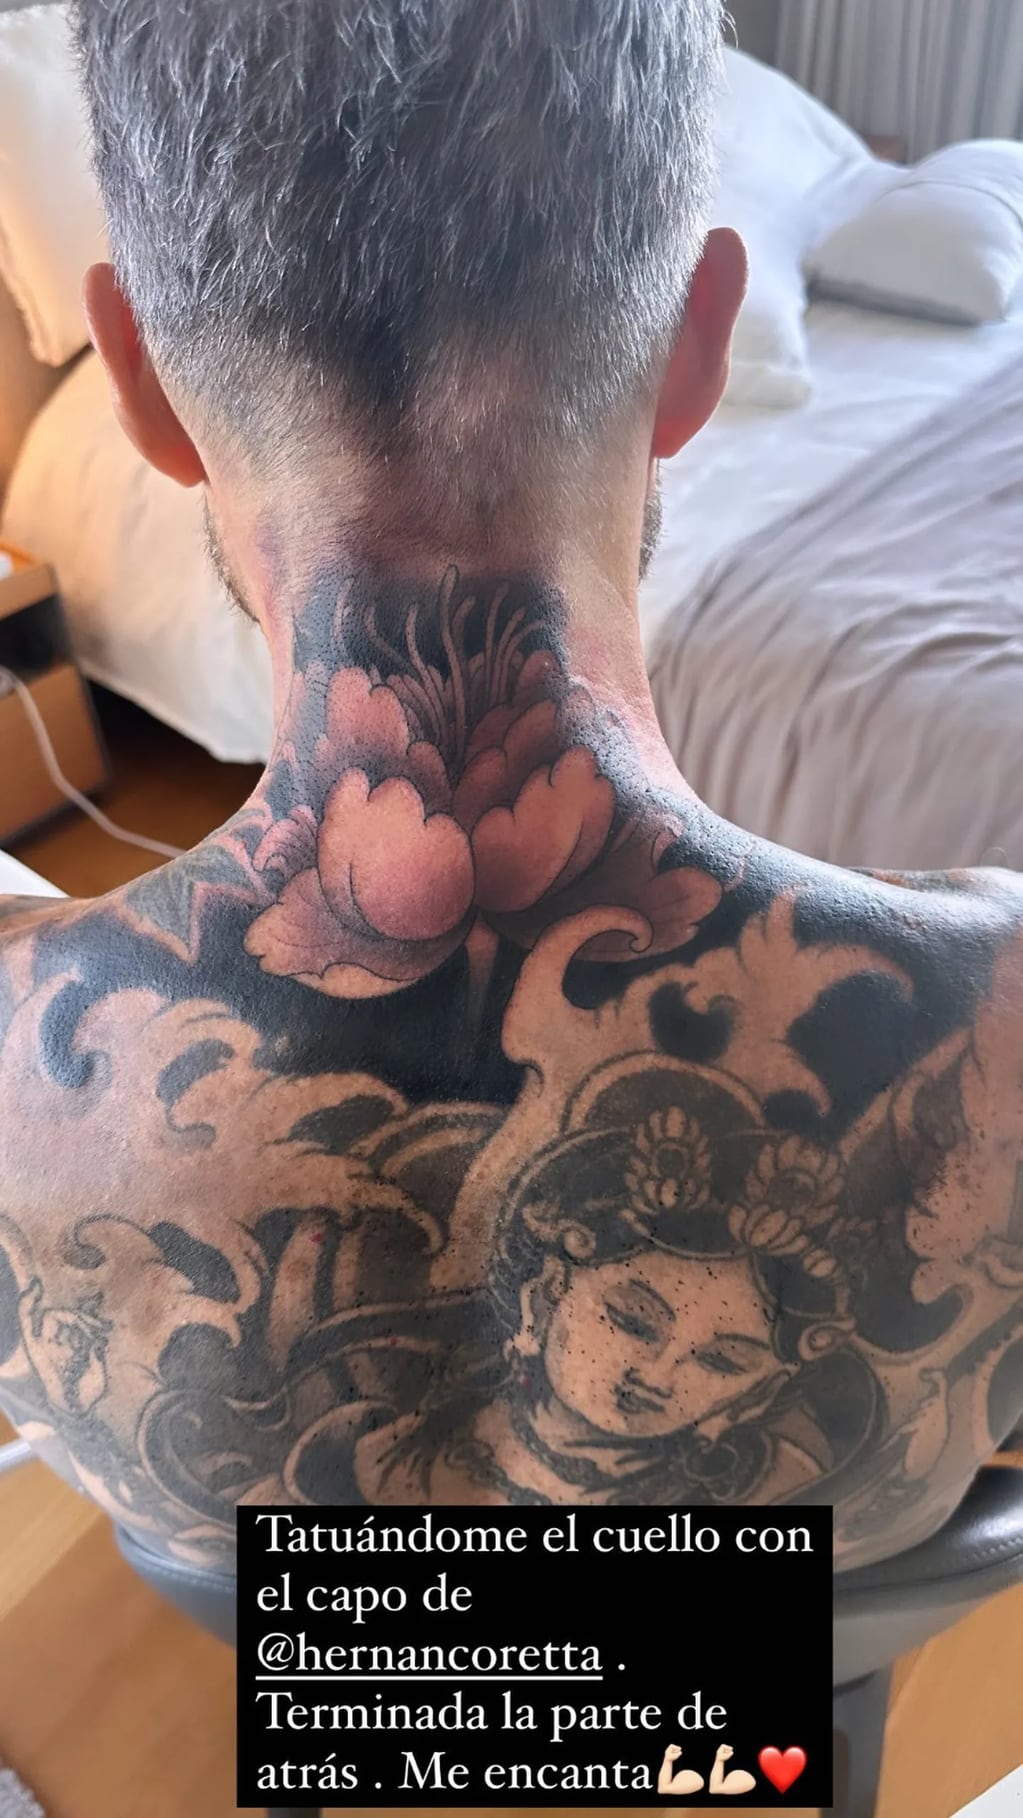 Así se hacía su nuevo tatuaje Marcelo Tinelli